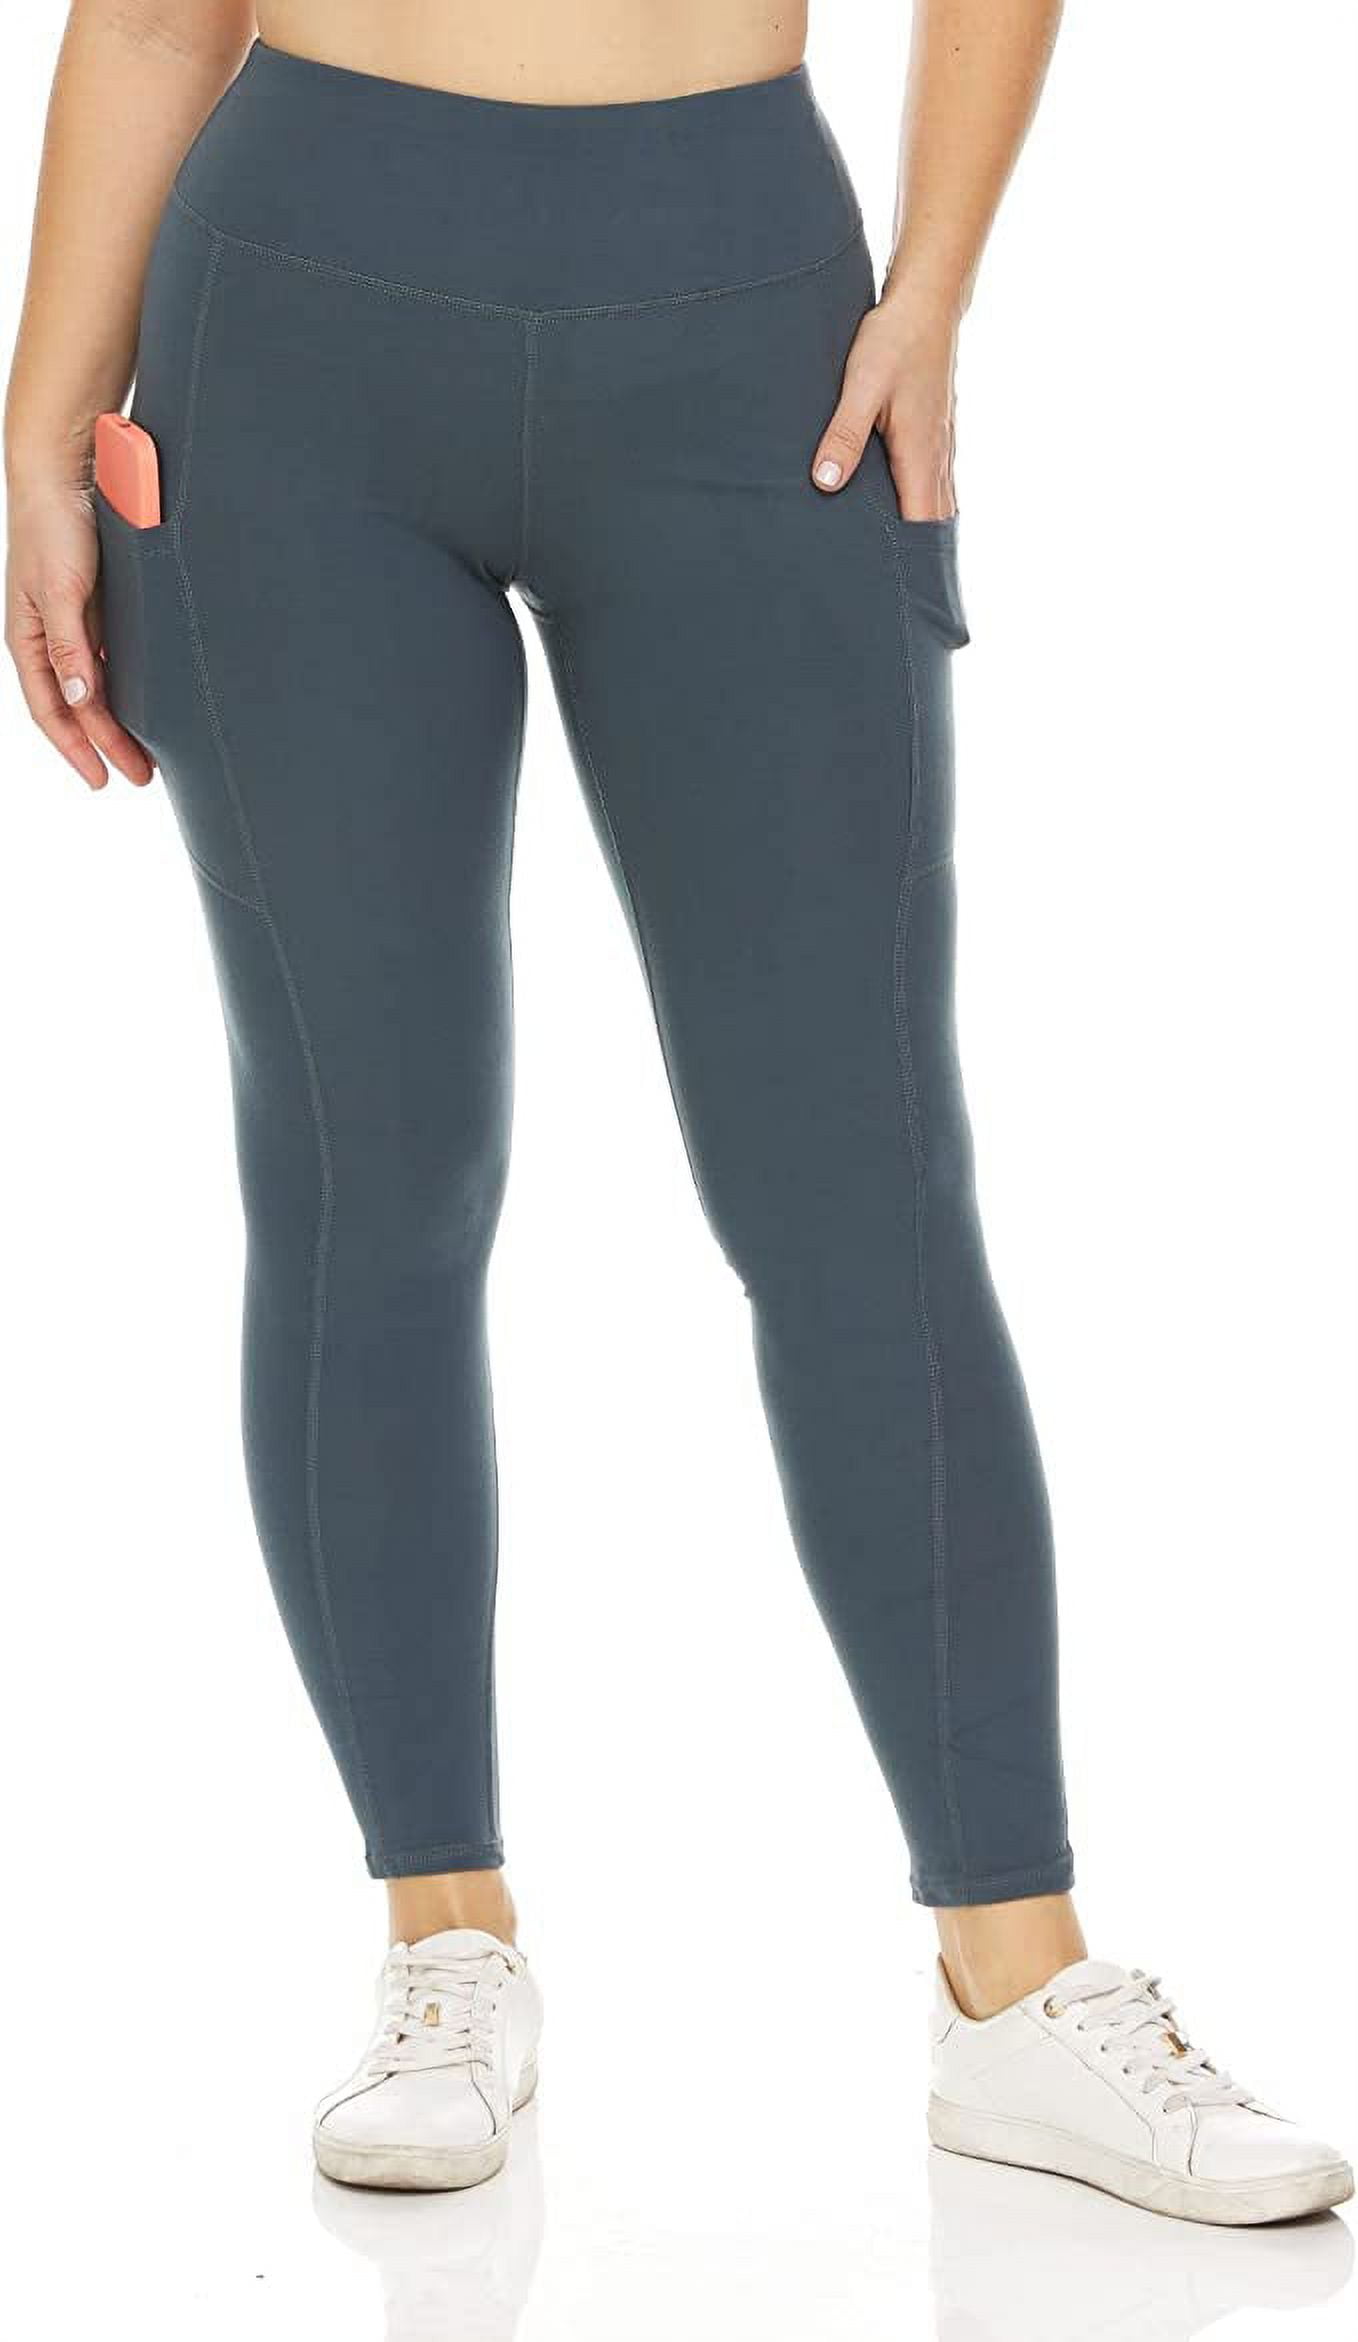 Inner Beauty Athletic Leggings for Women, Yoga Pants with Pockets, High  Waist, Slate Gray, Medium